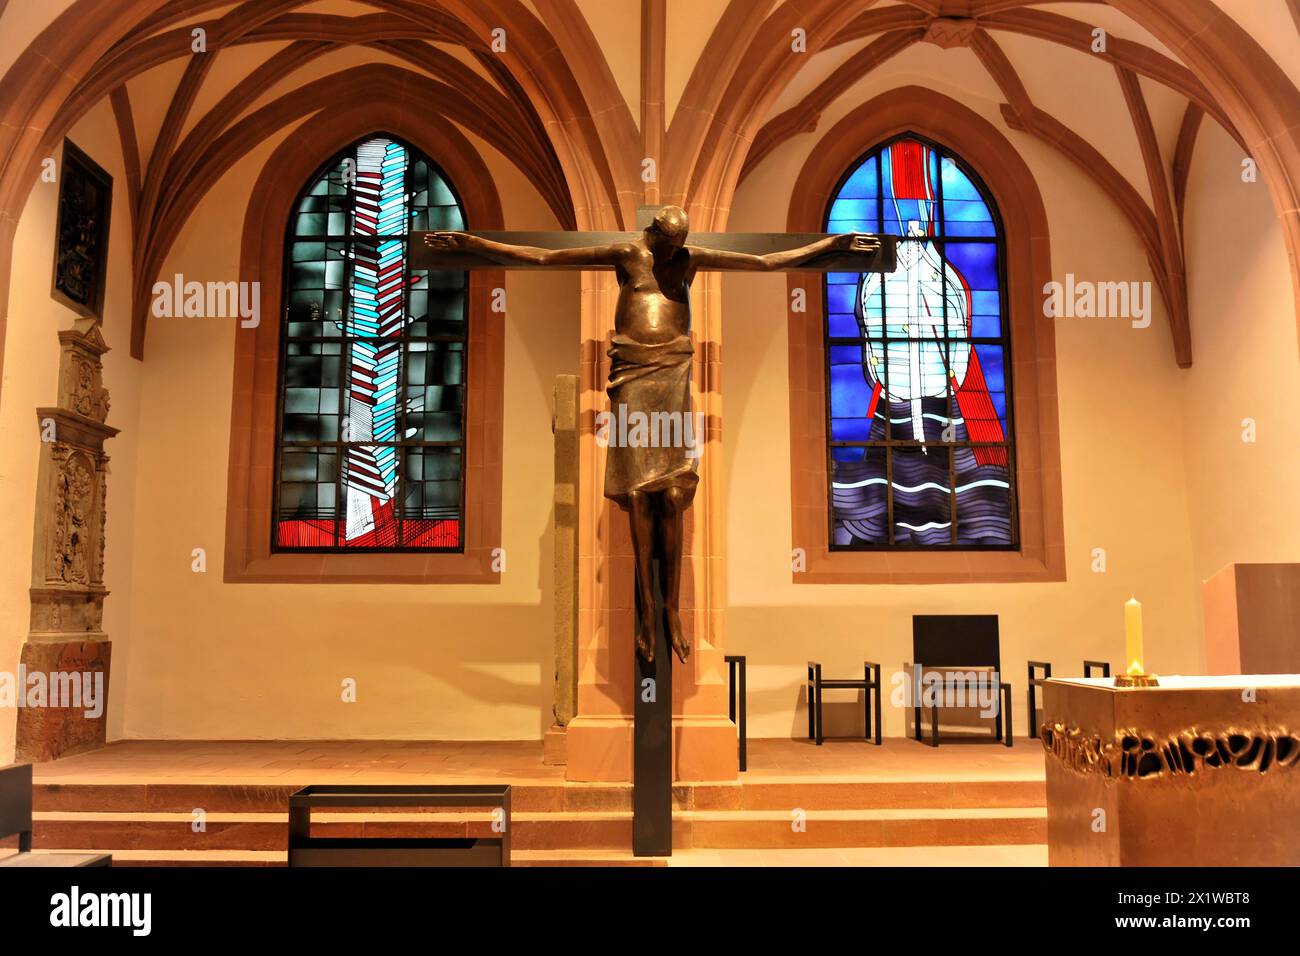 Cathédrale Saint-Kilian, cathédrale Saint-Kilian, Wuerzbourg, sculpture de la Crucifixion du Christ devant un vitrail, Wuerzbourg, inférieur Banque D'Images